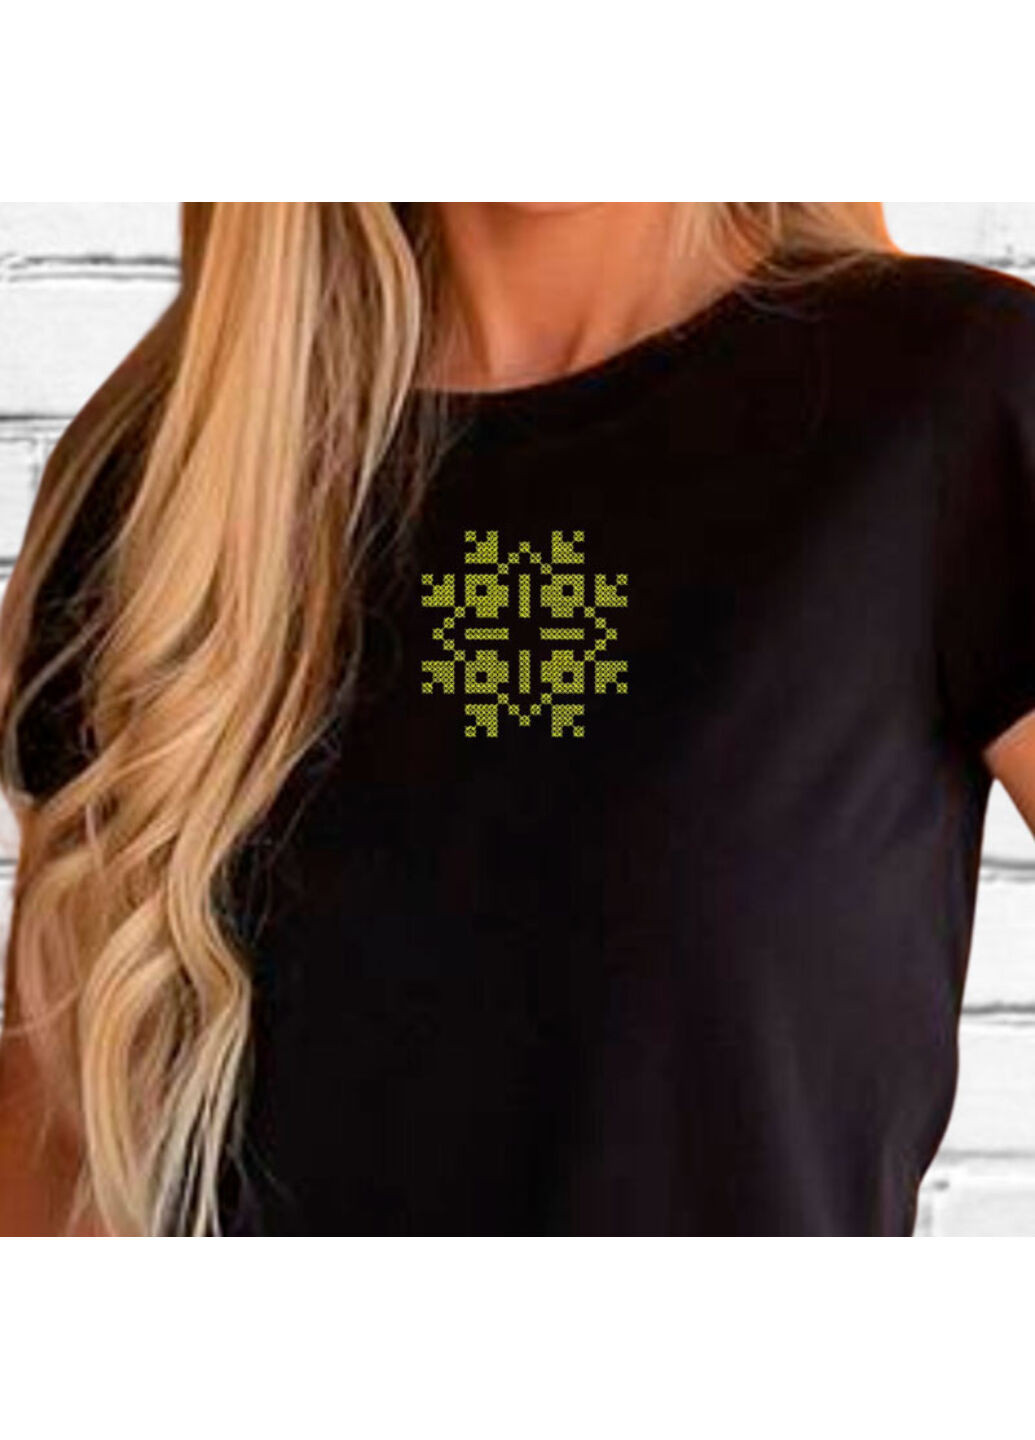 Чорна футболка етно з вишивкою 02-2 жіноча чорний xl No Brand